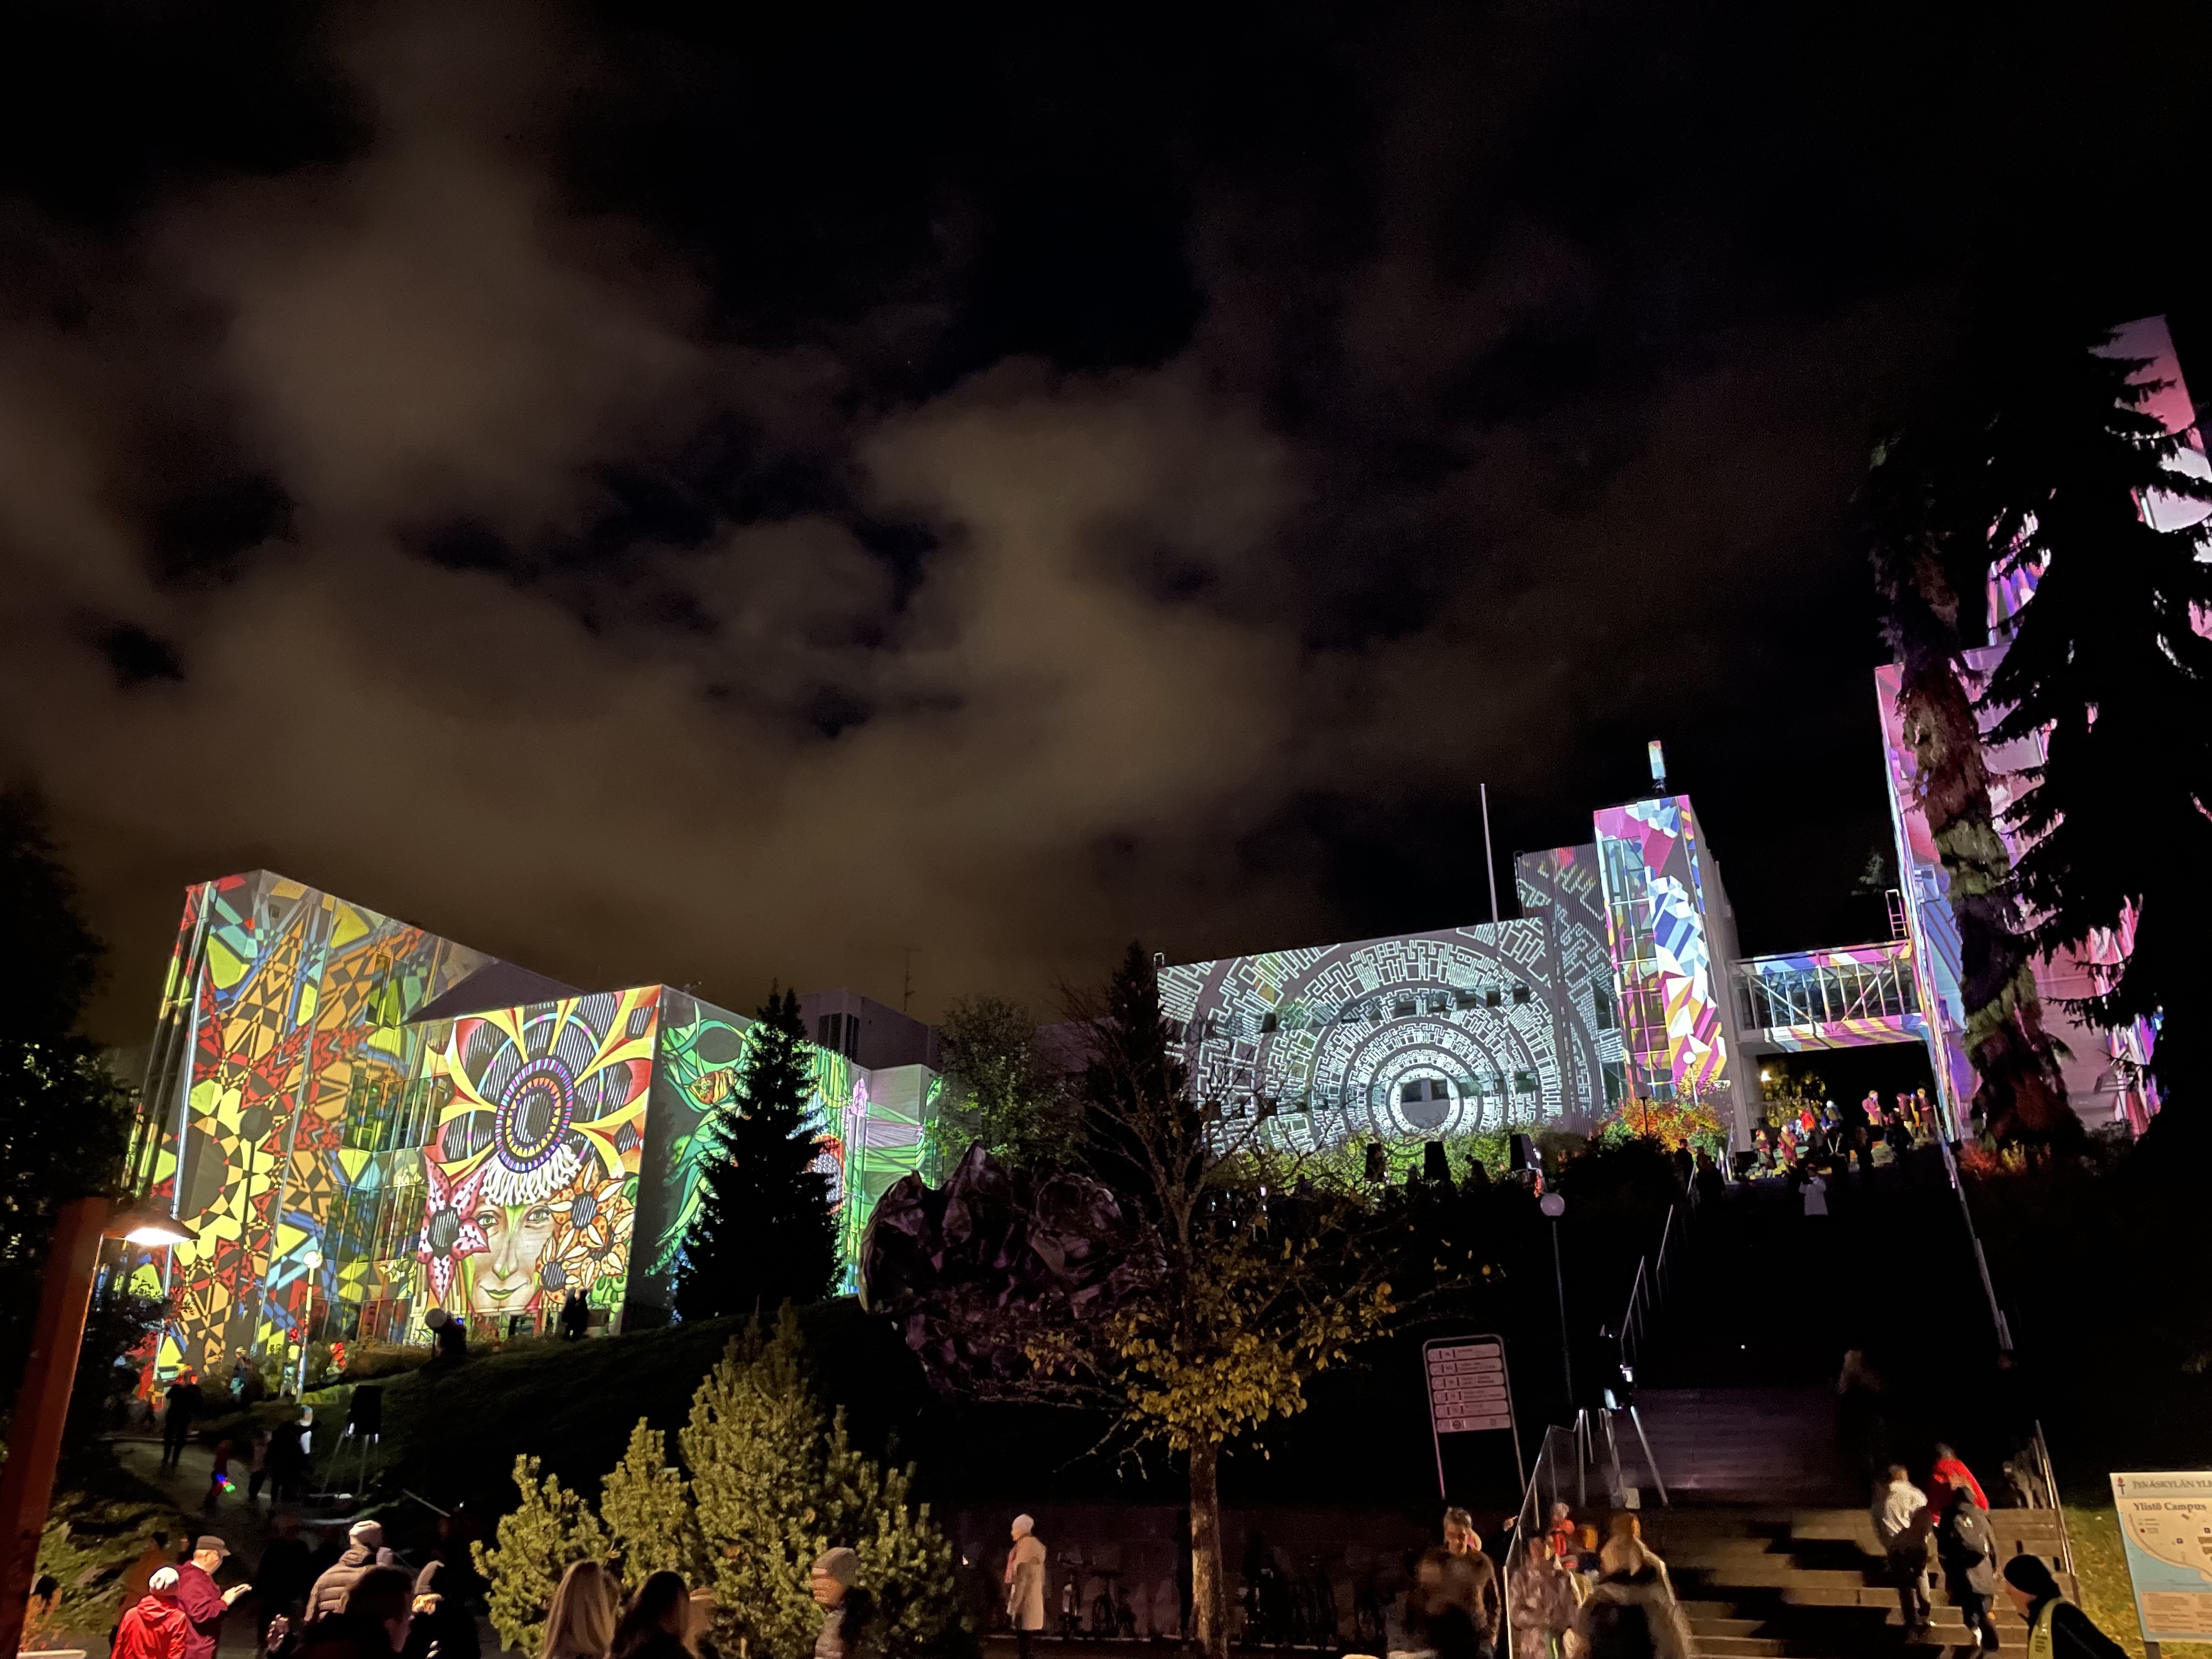 City of Lights Festival in Jyväskylä